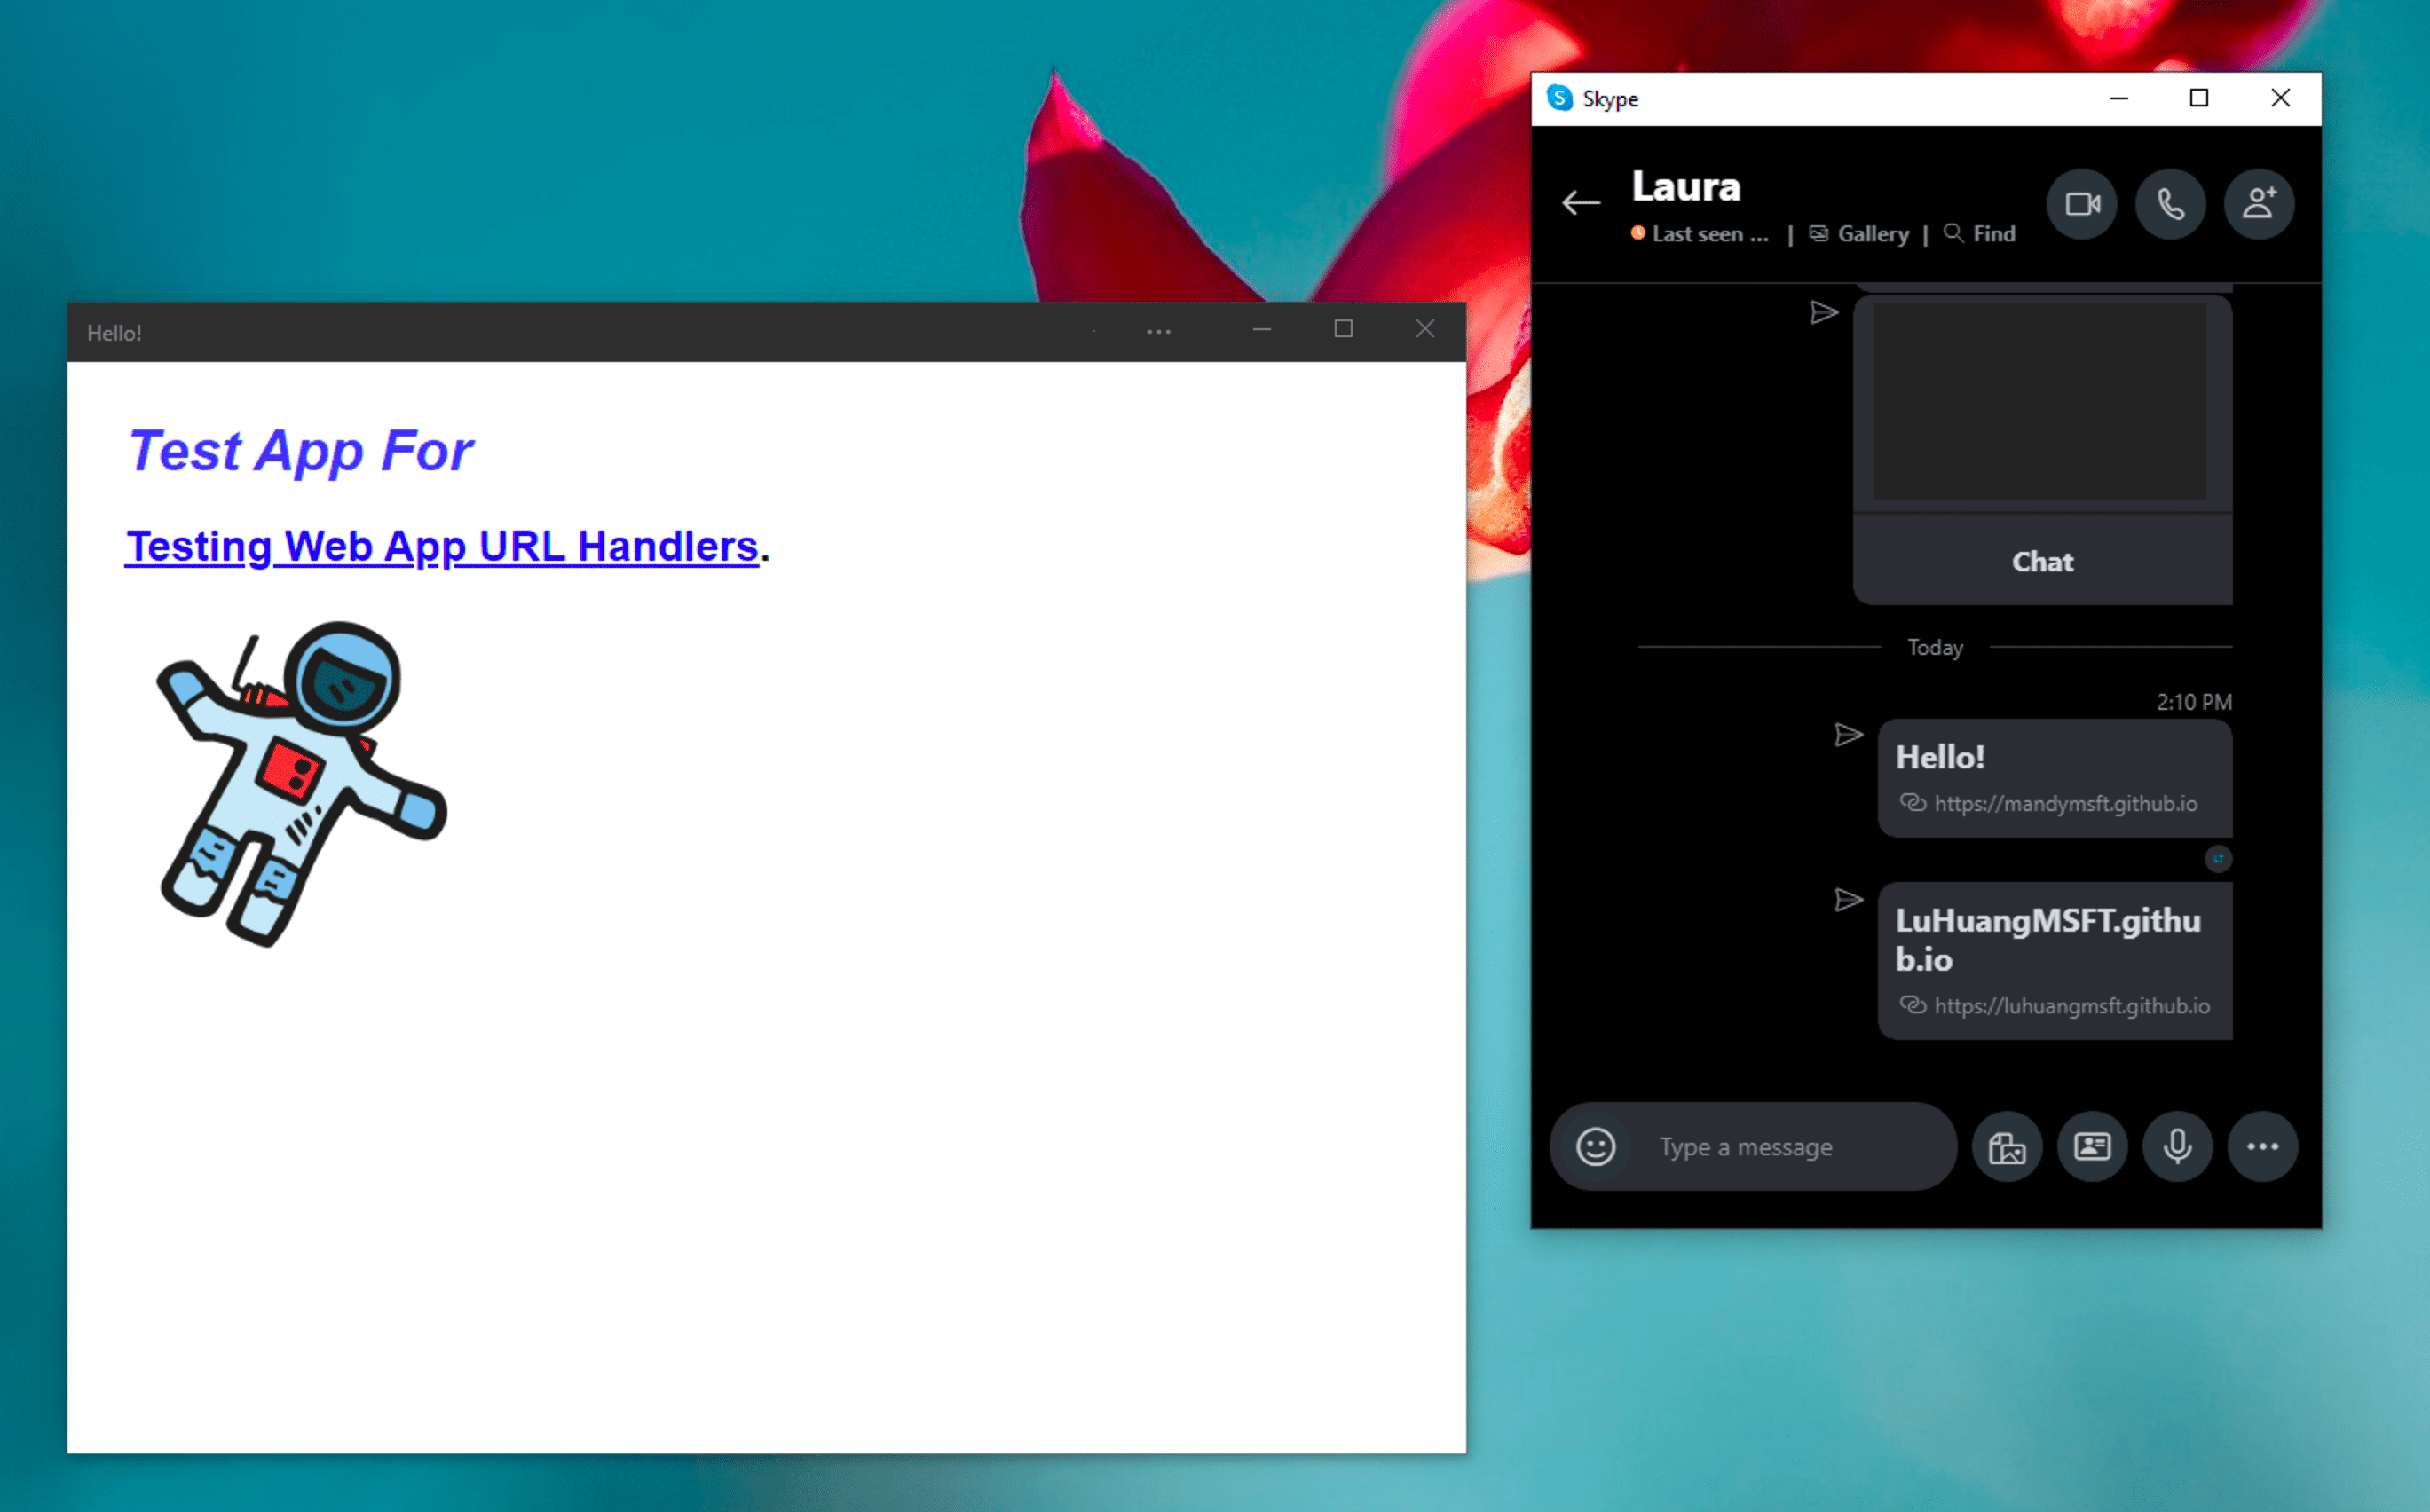 Application de messagerie instantanée Windows Skype à côté de la PWA de démonstration installée, ouverte en mode autonome après avoir cliqué sur un lien géré par celle-ci dans un message de chat Skype